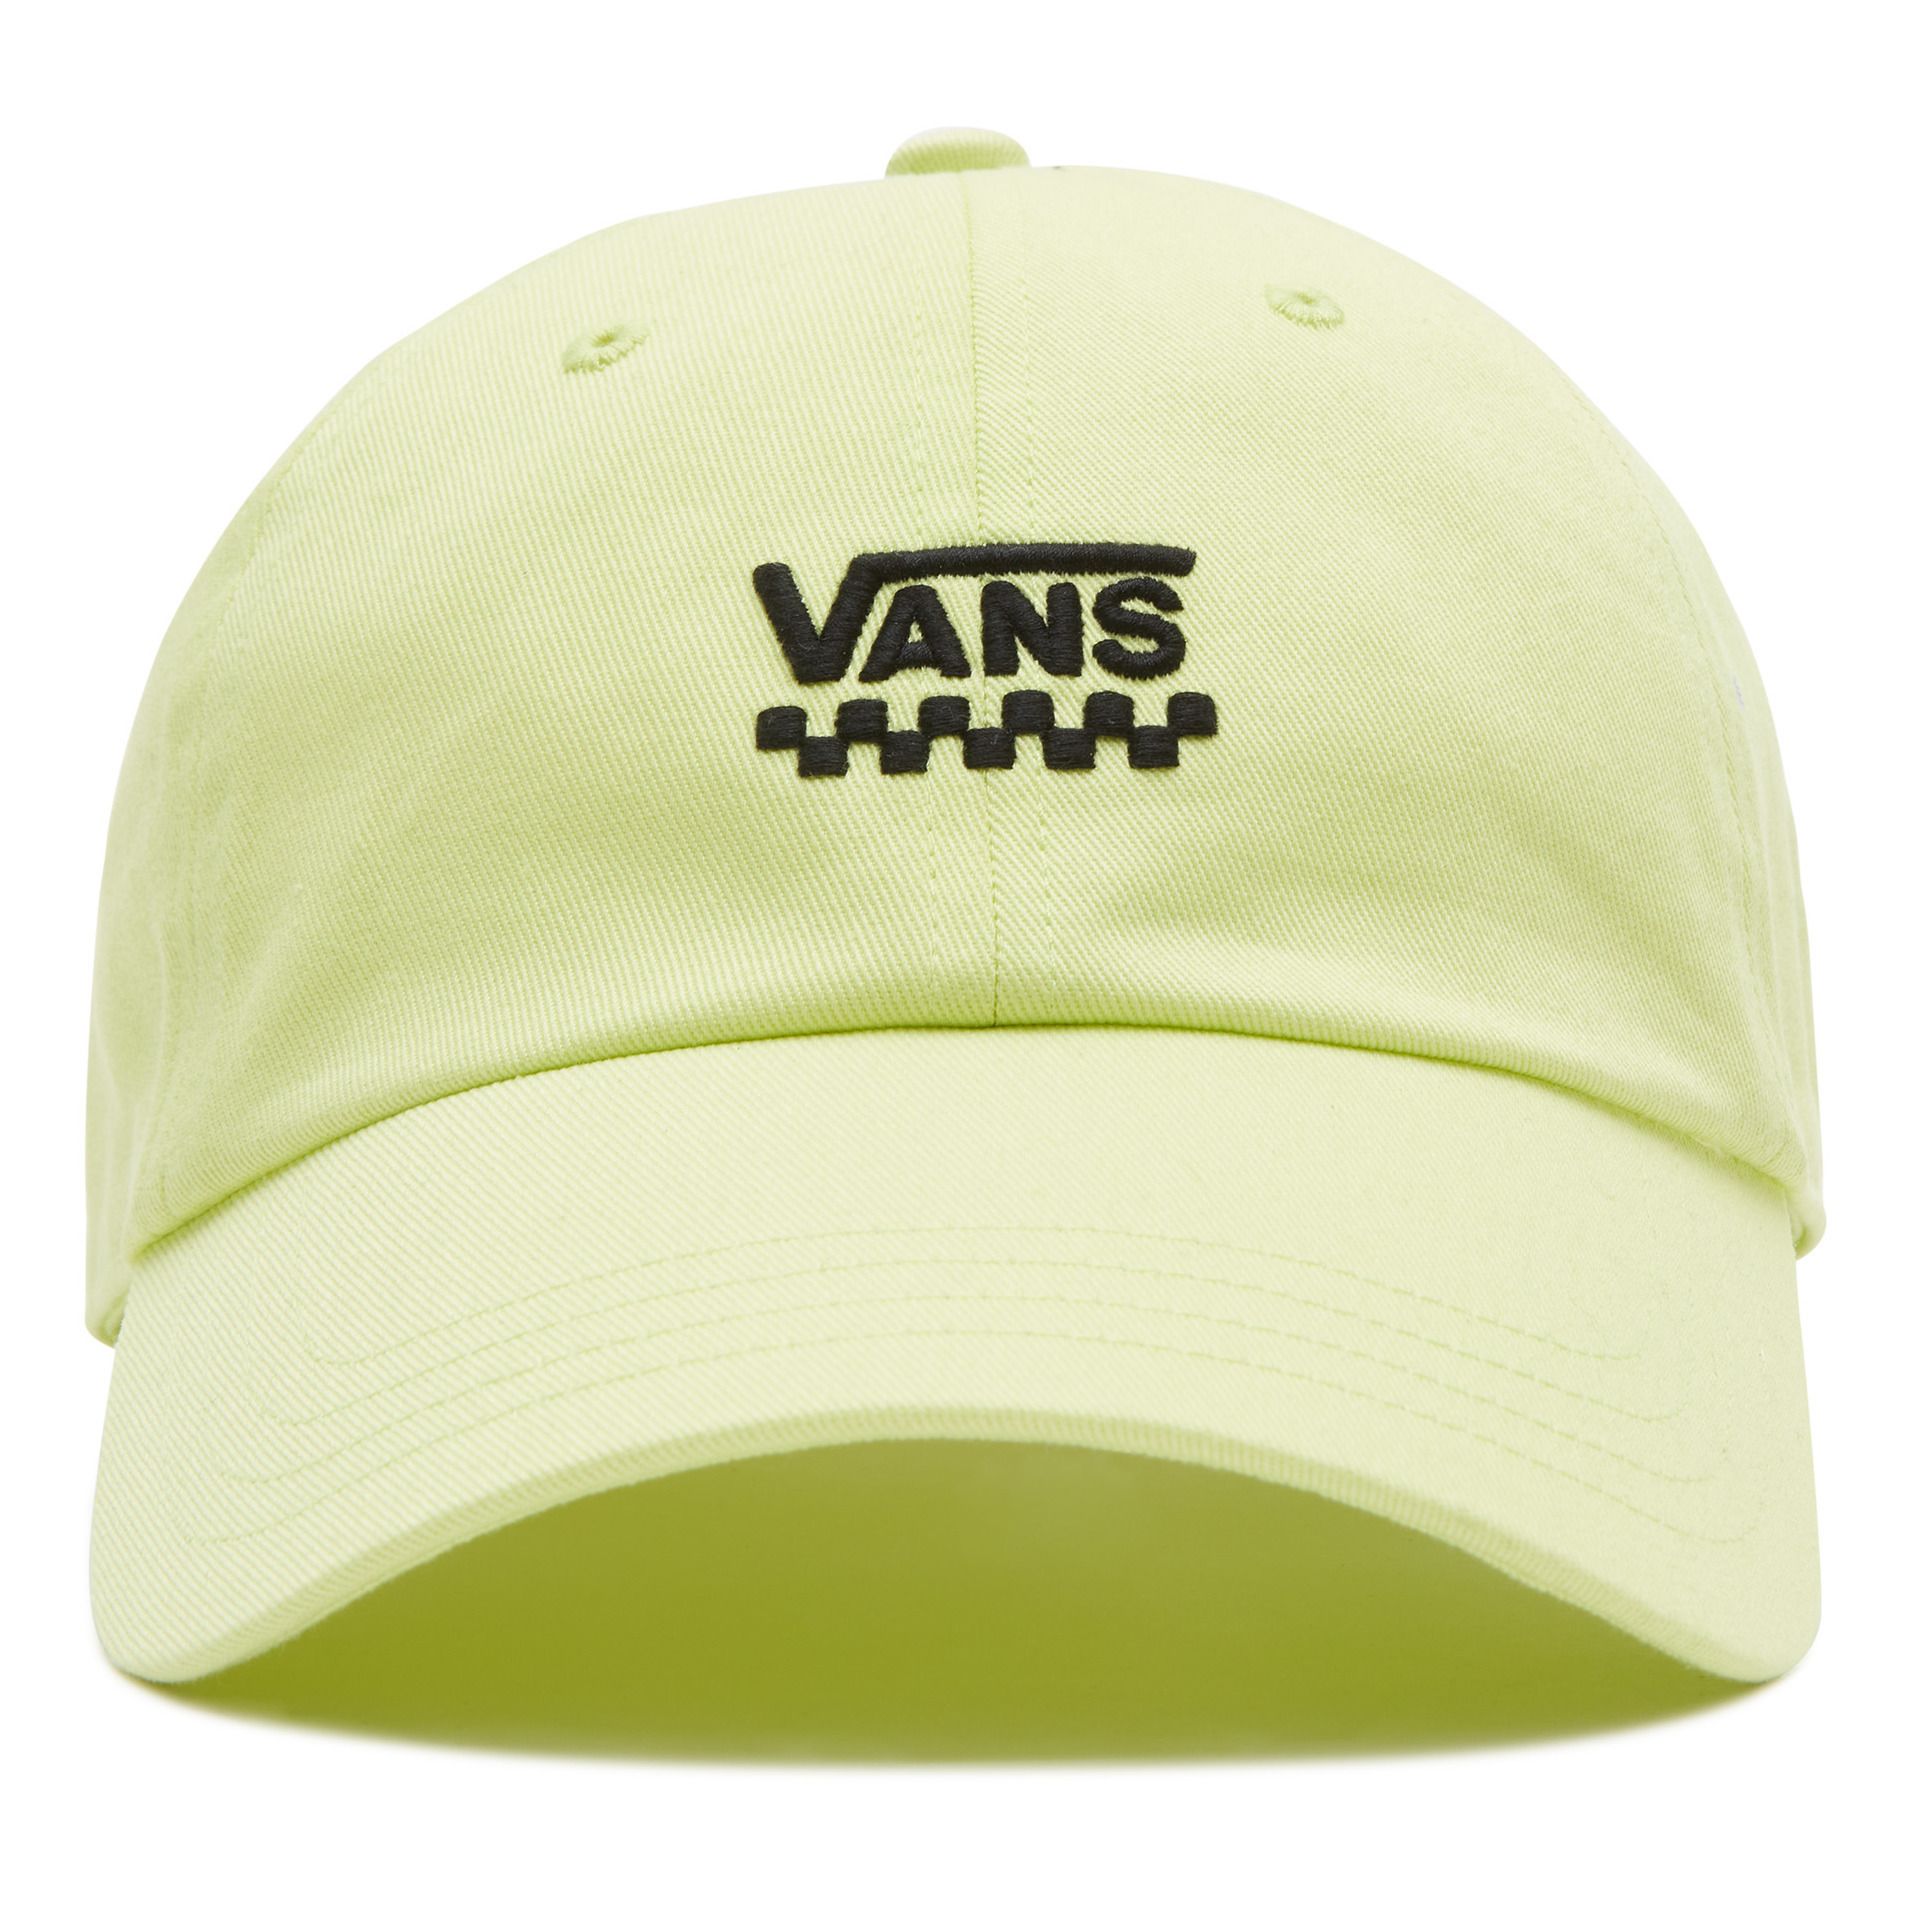 Vans - Casquette Logo - Homme - Vert anis